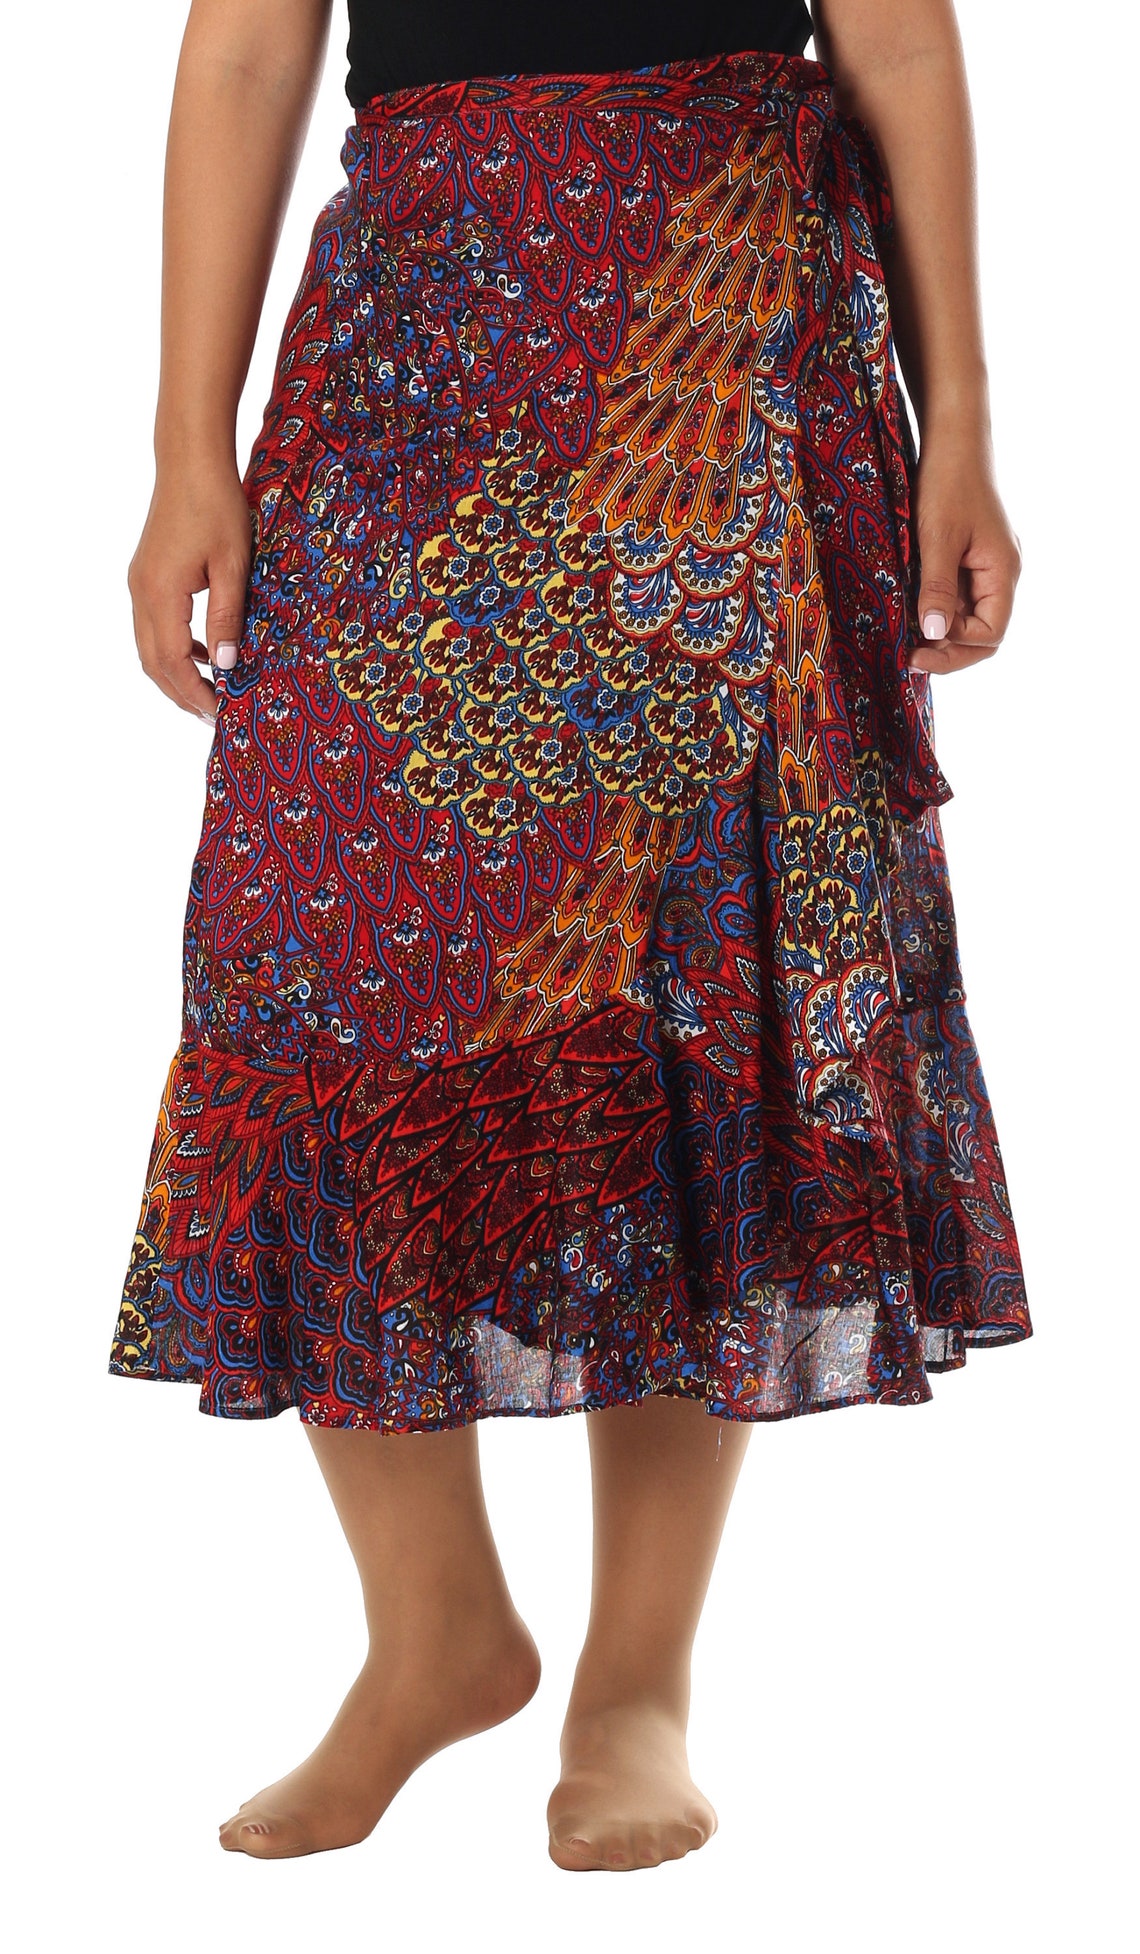 RED BOHO SKIRT Women Wrap Skirt Knee Length Gypsy Bohemian - Etsy